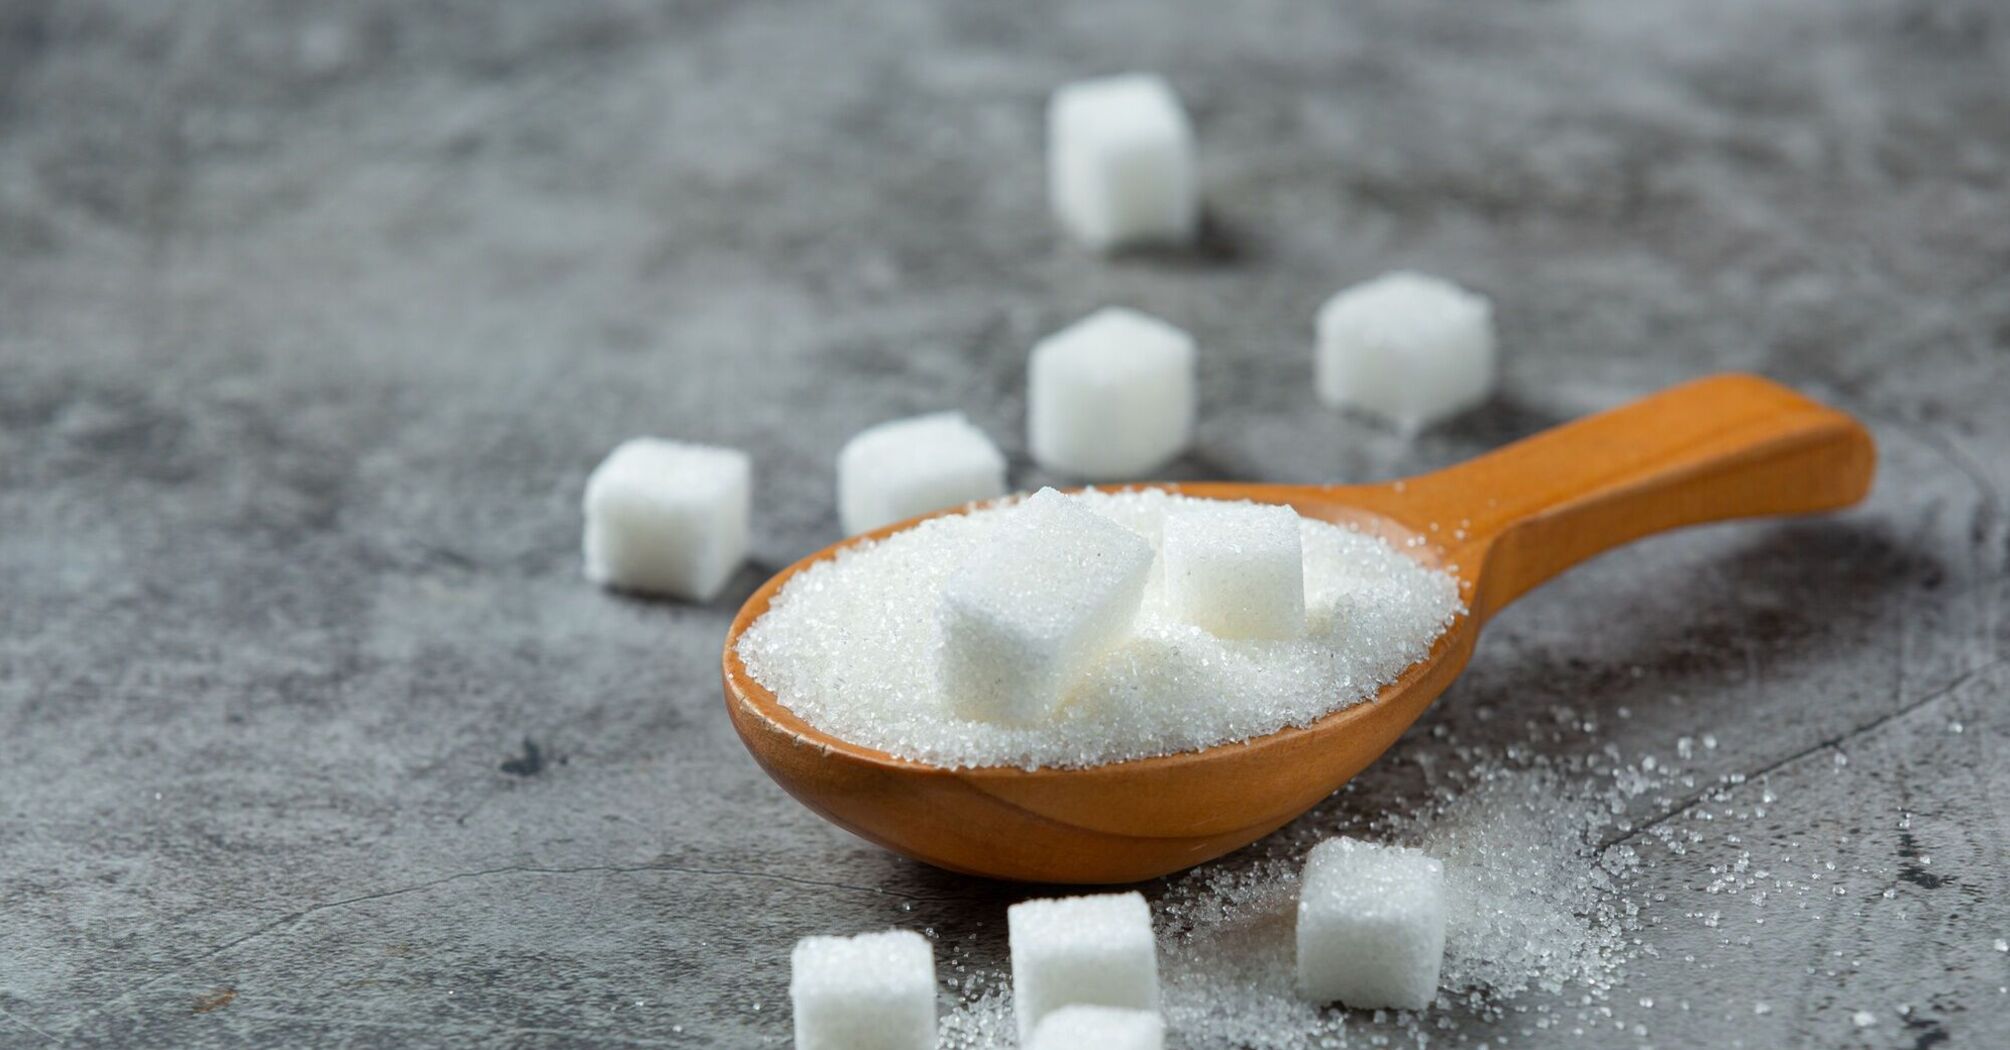 Ukraina osiągnęła historyczne maksimum sprzedaży cukru za granicą